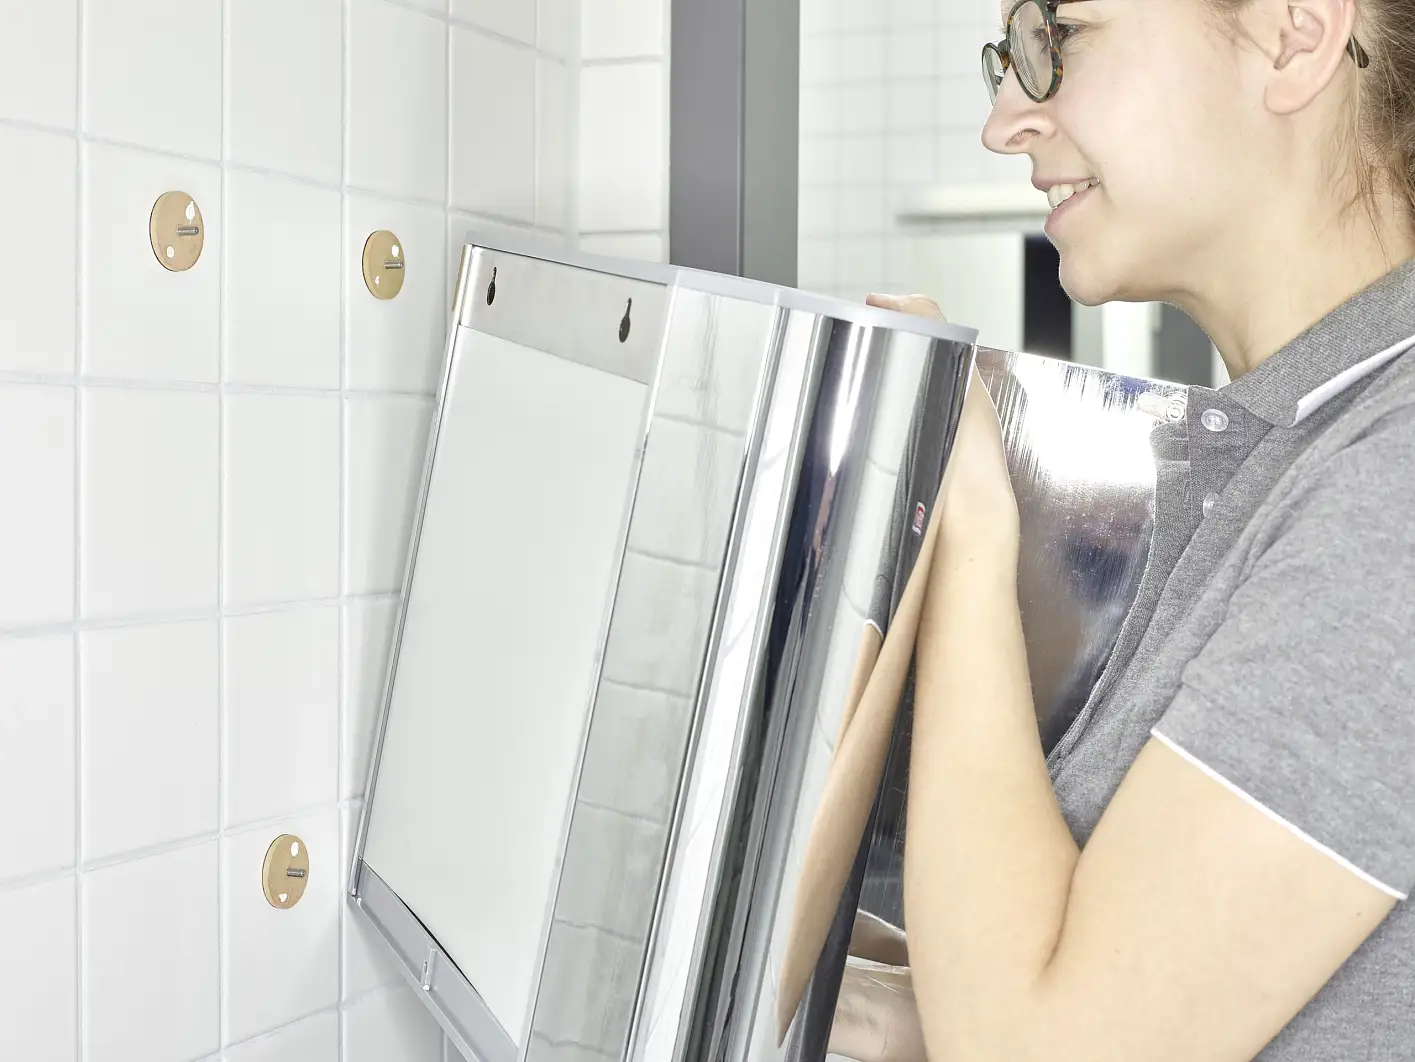 tesa-powerkit-handdoekdispenser-voor-professionele-industriële-reiniging-hygiëne-stap3van7